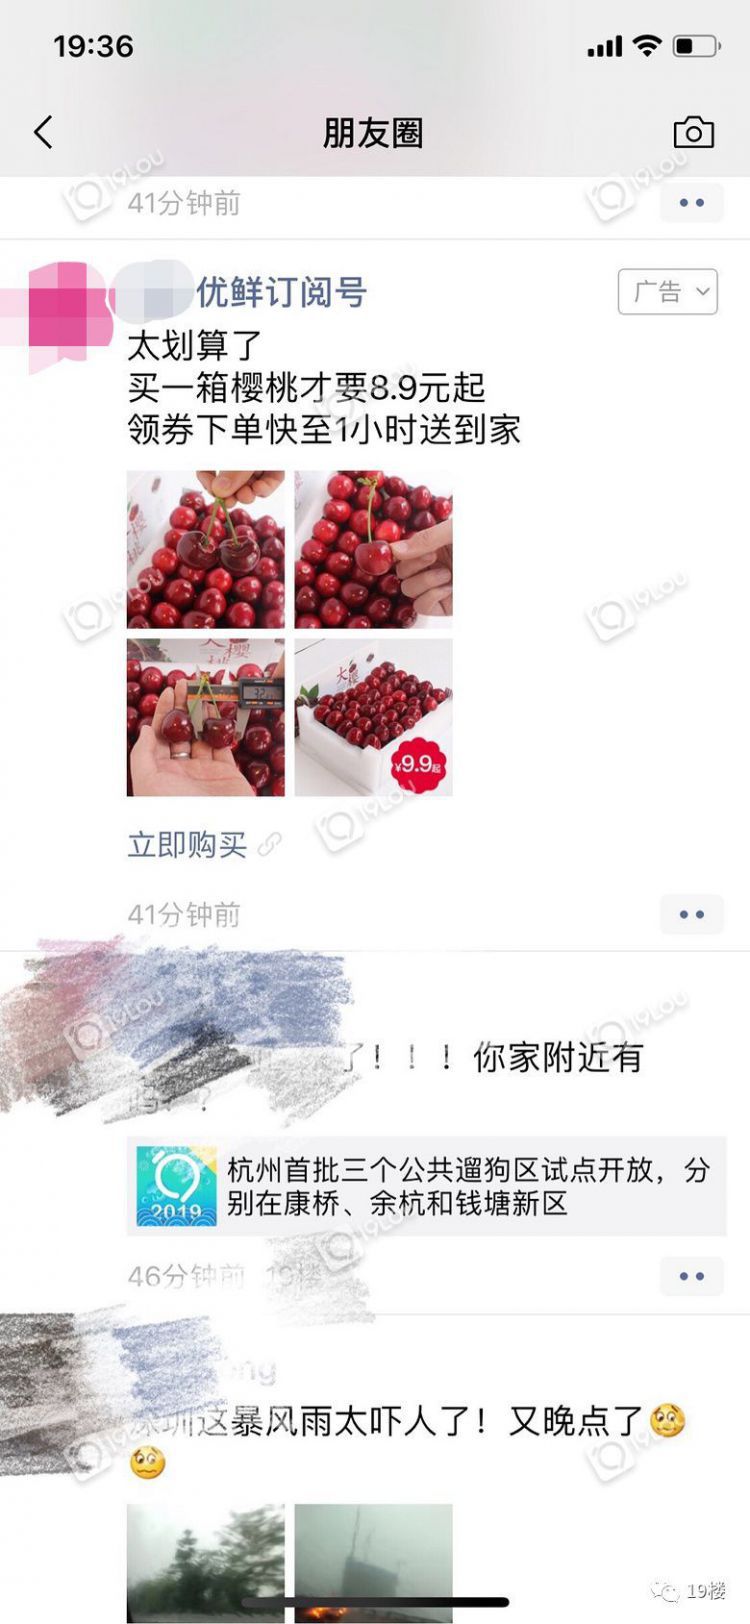 水果1元购居然是个坑？！杭州网友亲历朋友圈广告套路：光草莓就已有17595人参加...